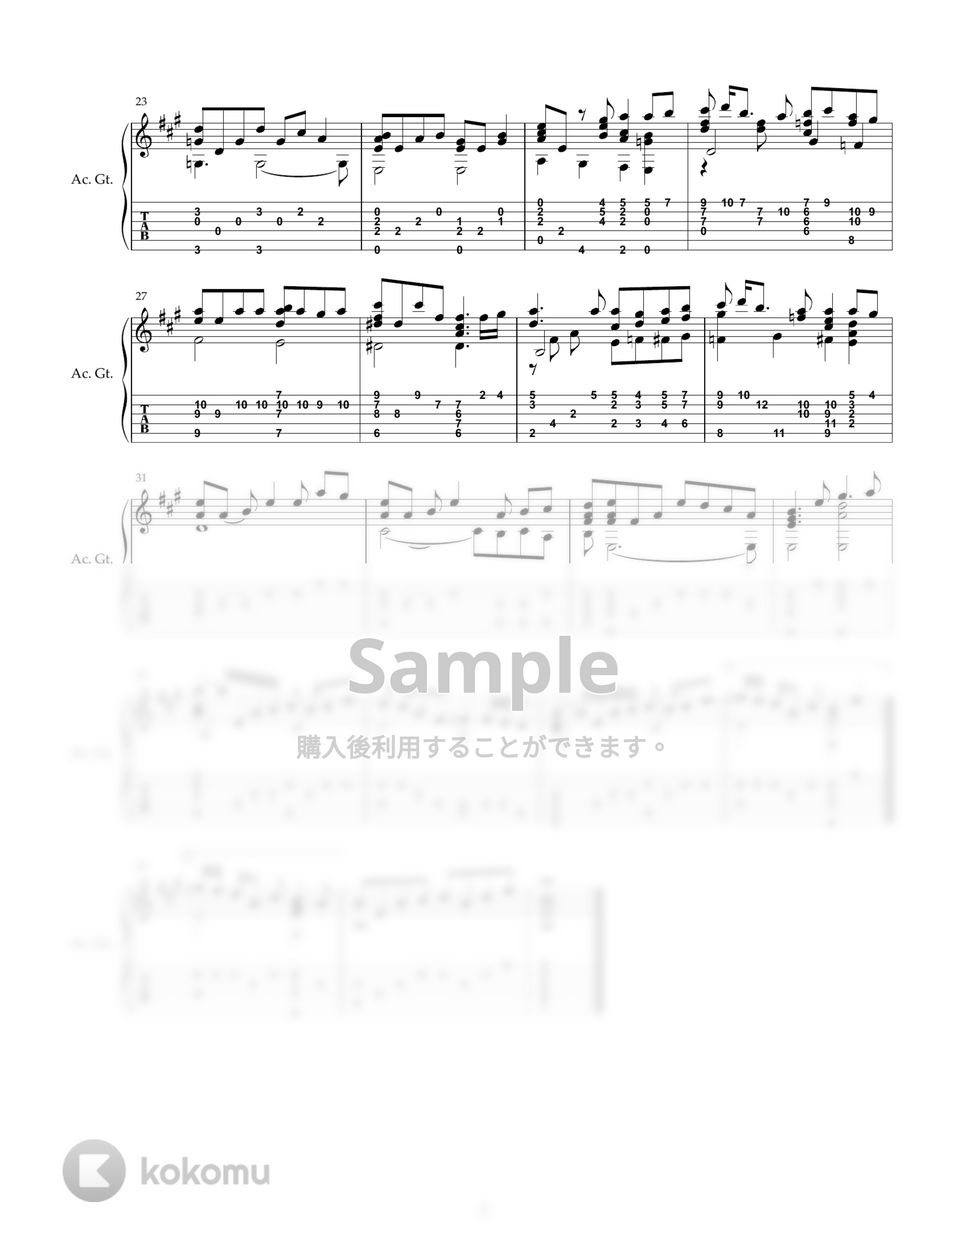 手嶌葵 - 明日への手紙 (ソロギター) by DegicoDegio